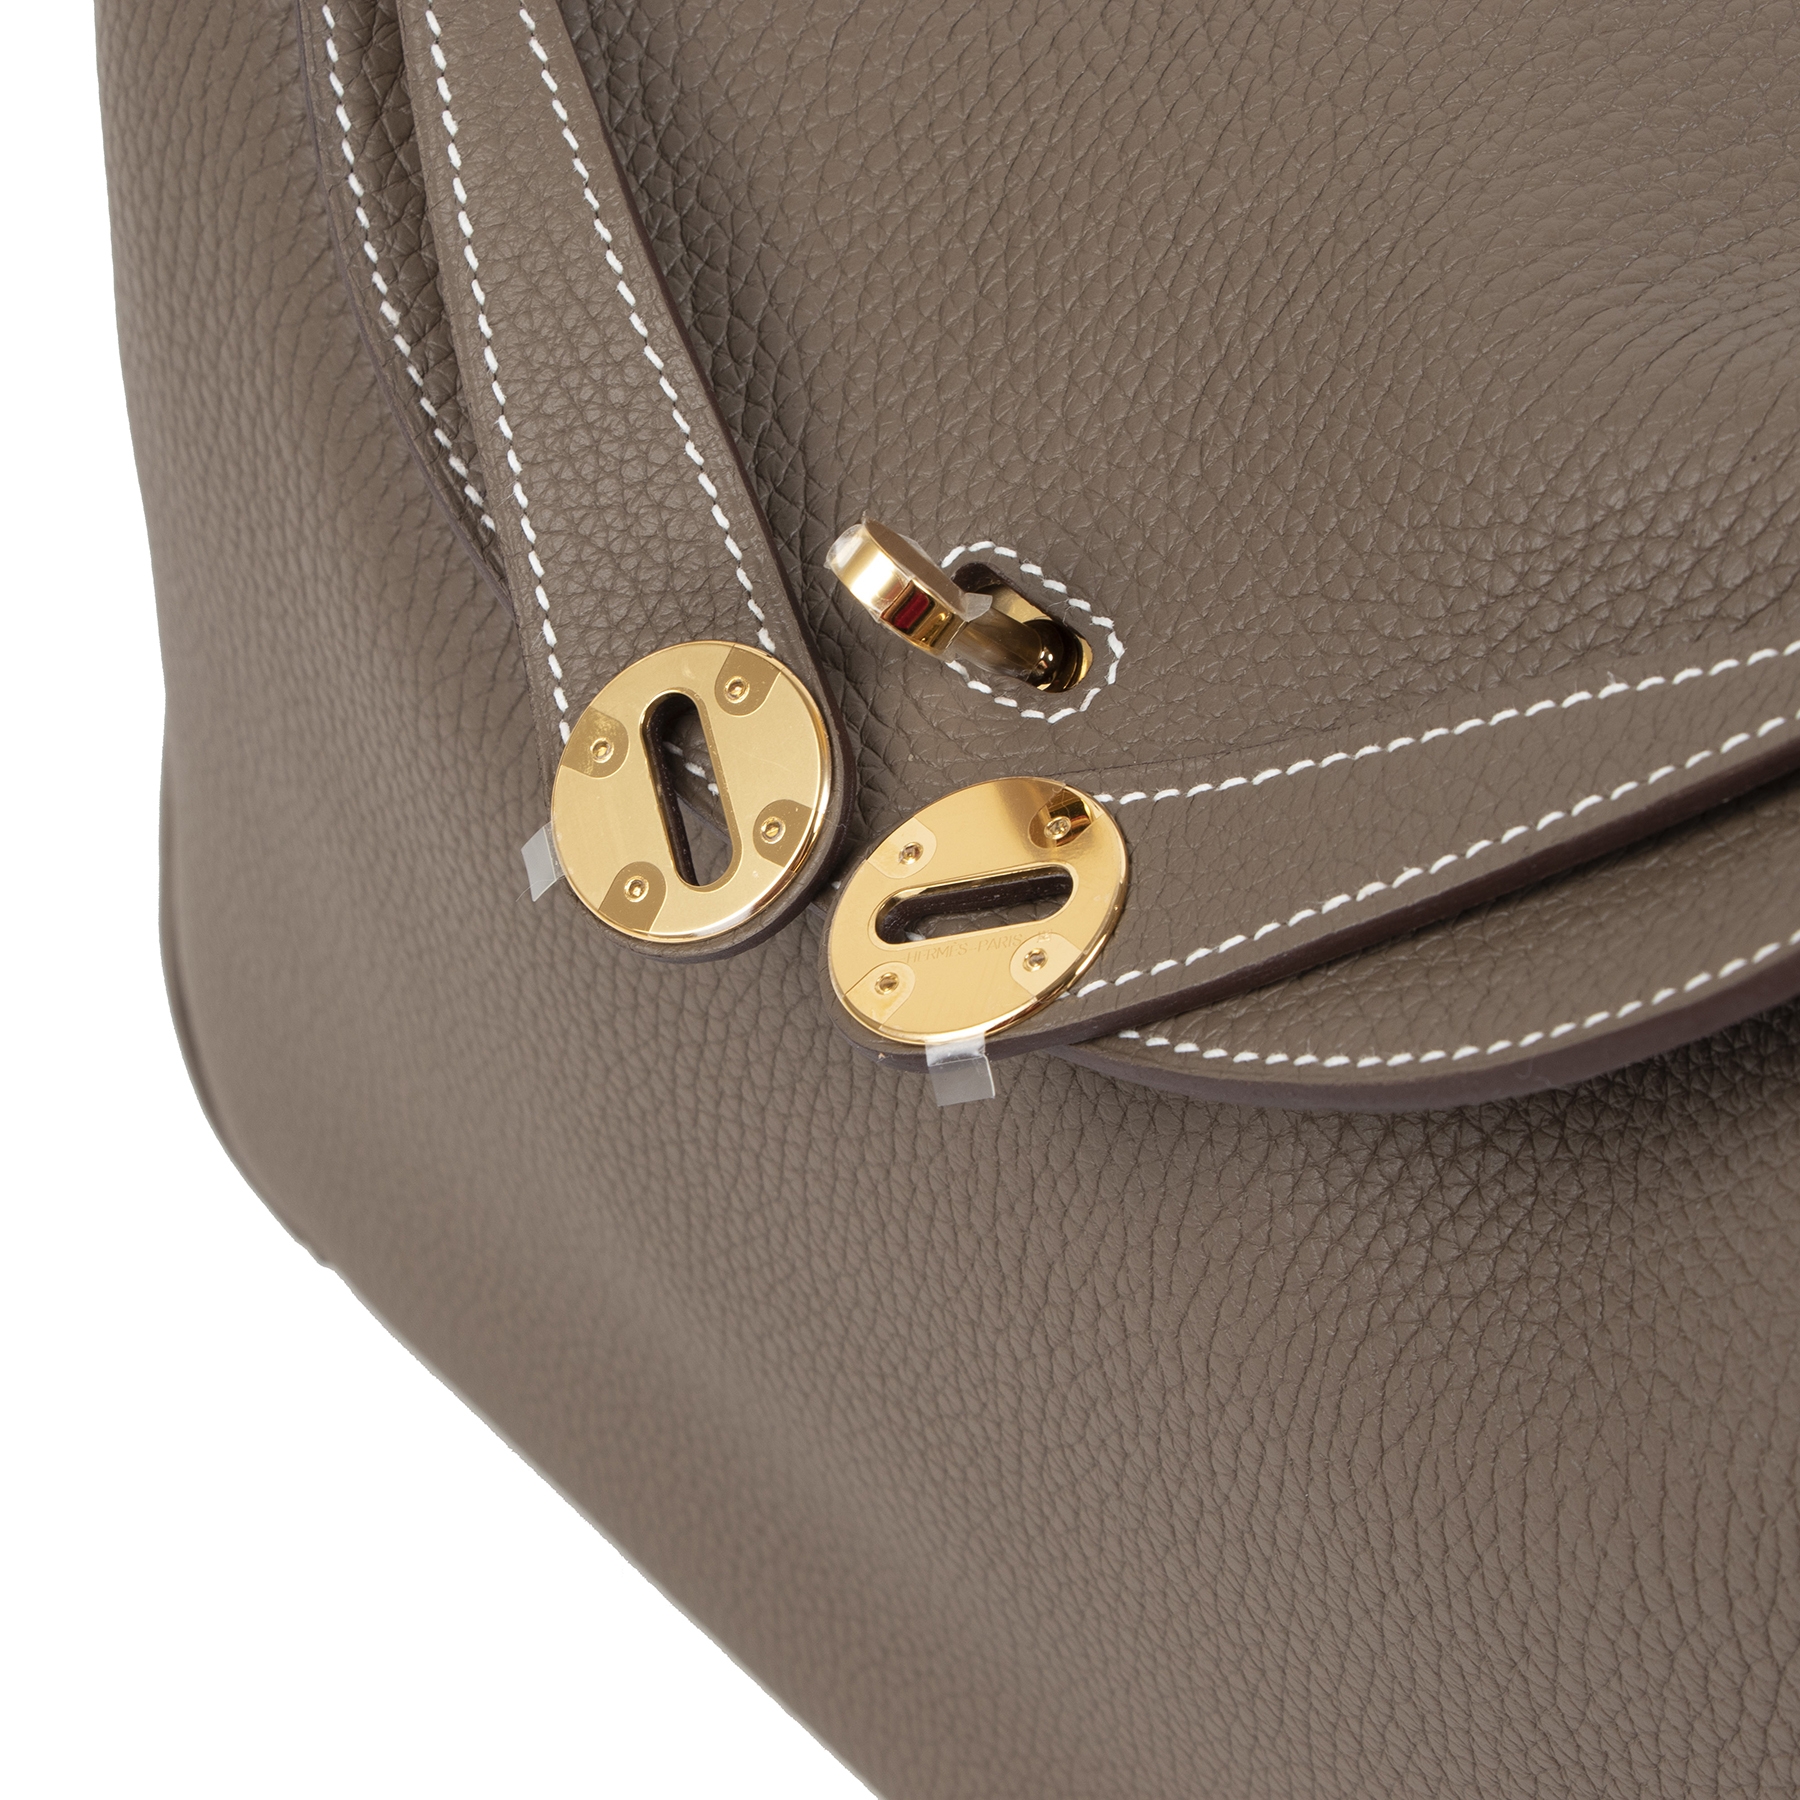 Hermès Etoupe Swift 34cm Lindy Bag - Vintage Lux